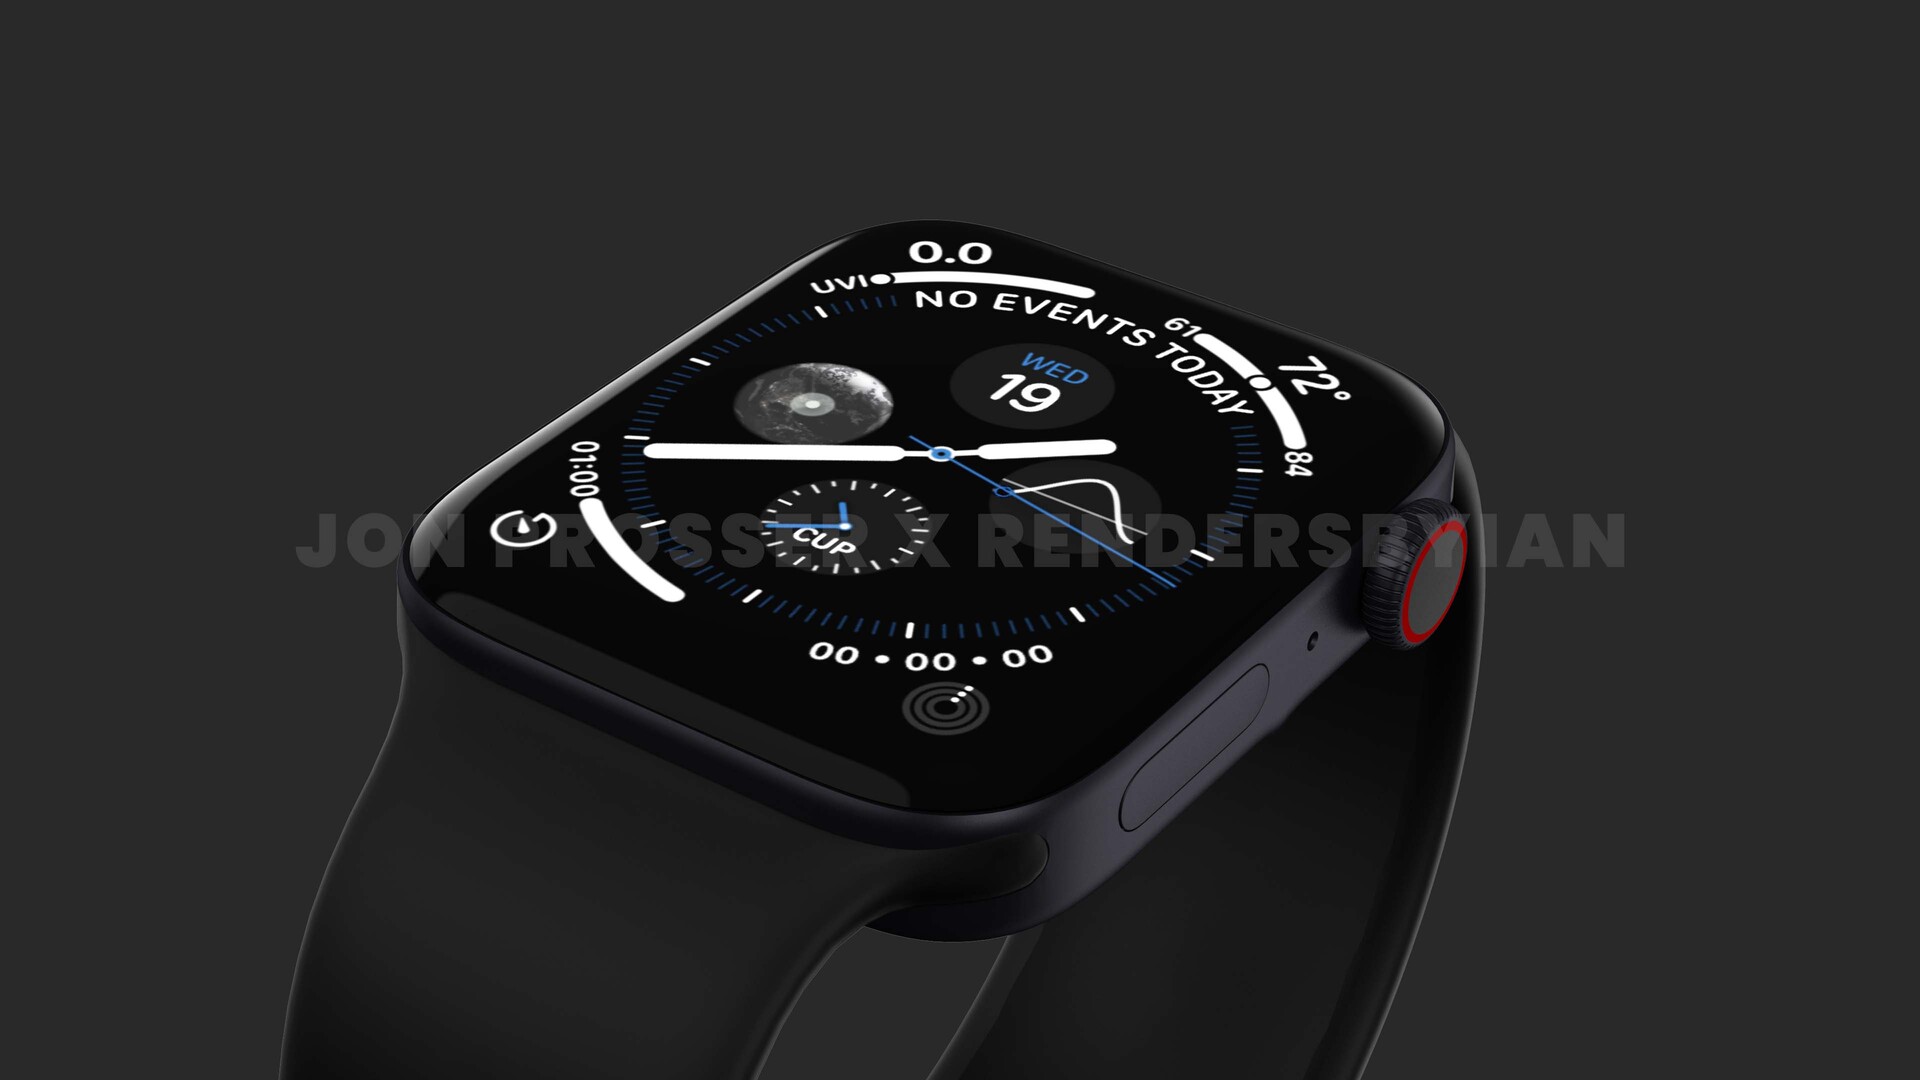 Apple Watch Series 7 Renderbilder auf Basis geleakter CADDateien